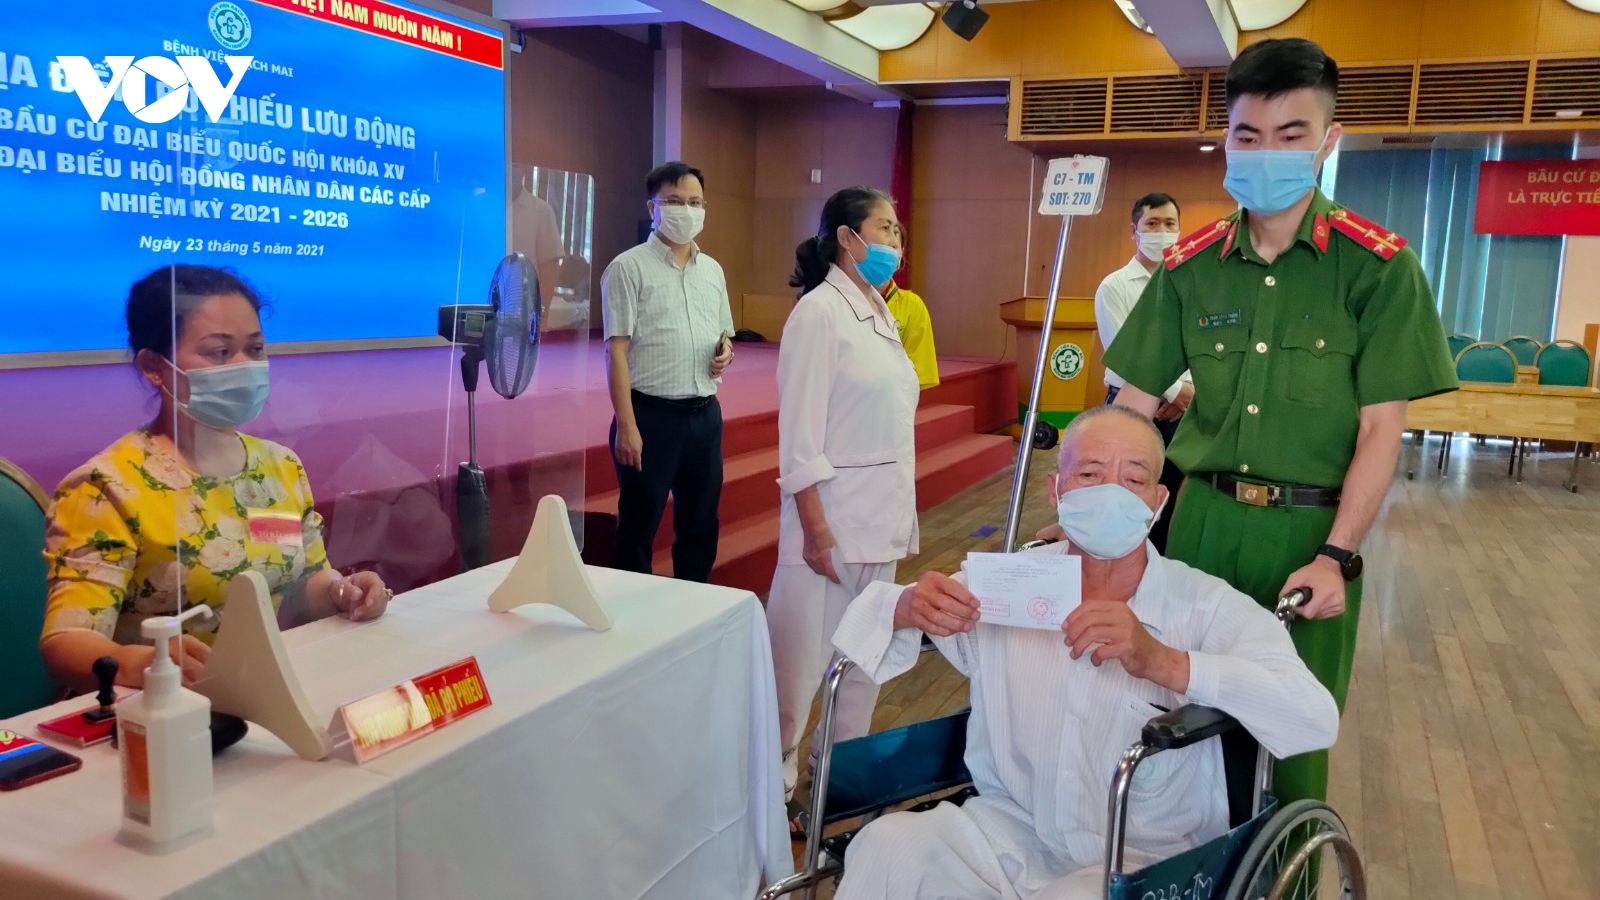 Nhiều bệnh nhân Bệnh viện Bạch Mai ngồi xe lăn đi bầu cử